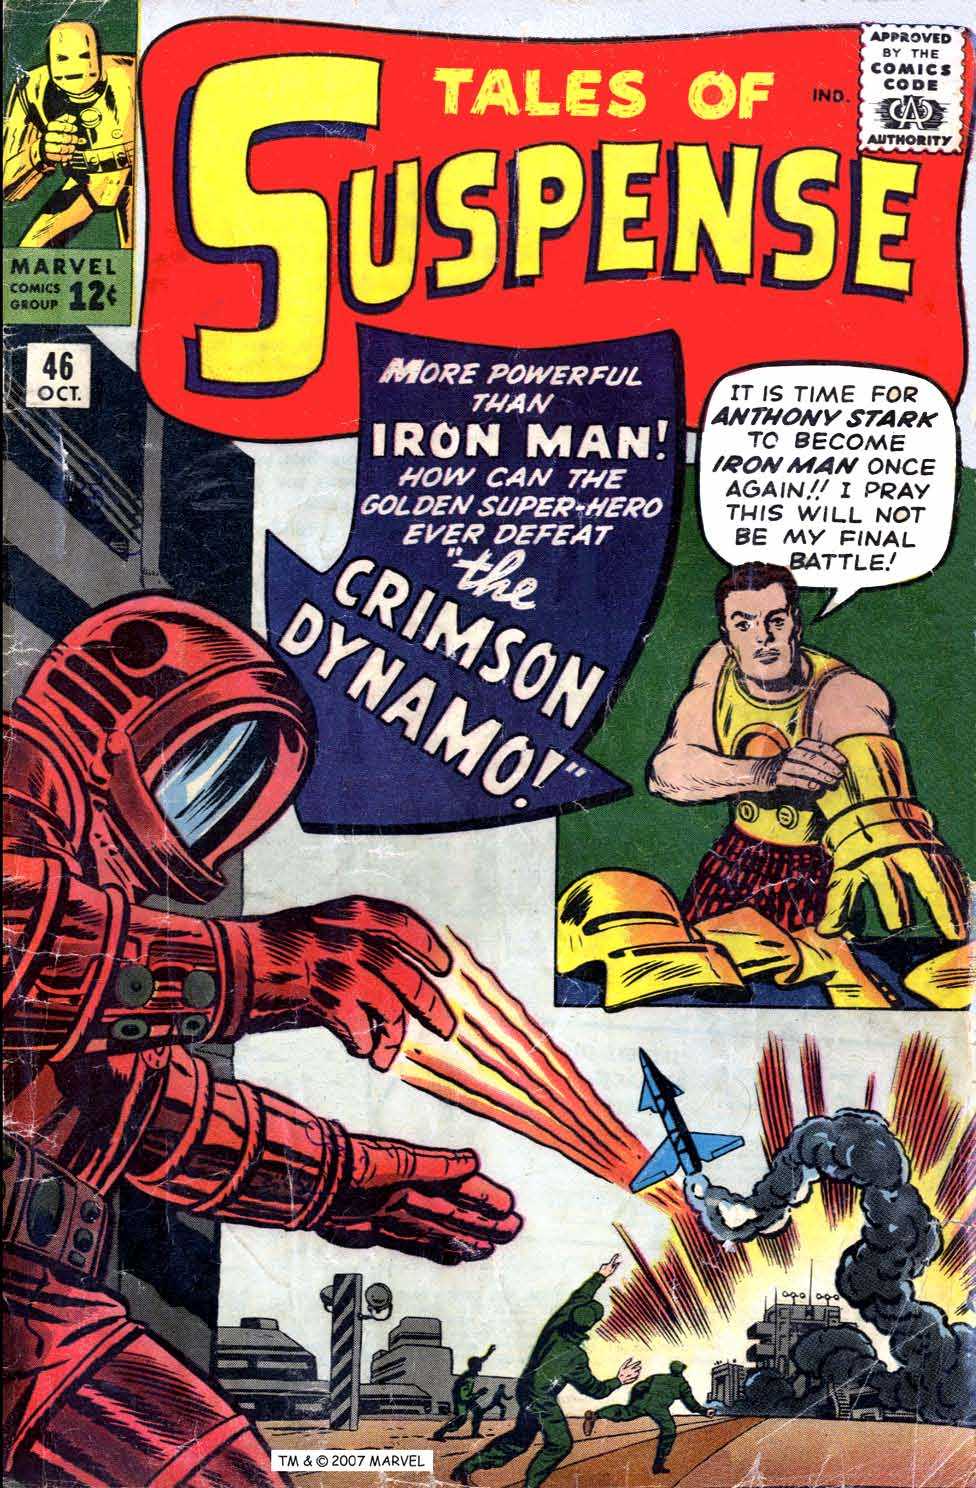 Tales of Suspense No 46 cover; Iron Man vs Crimson Dynamo